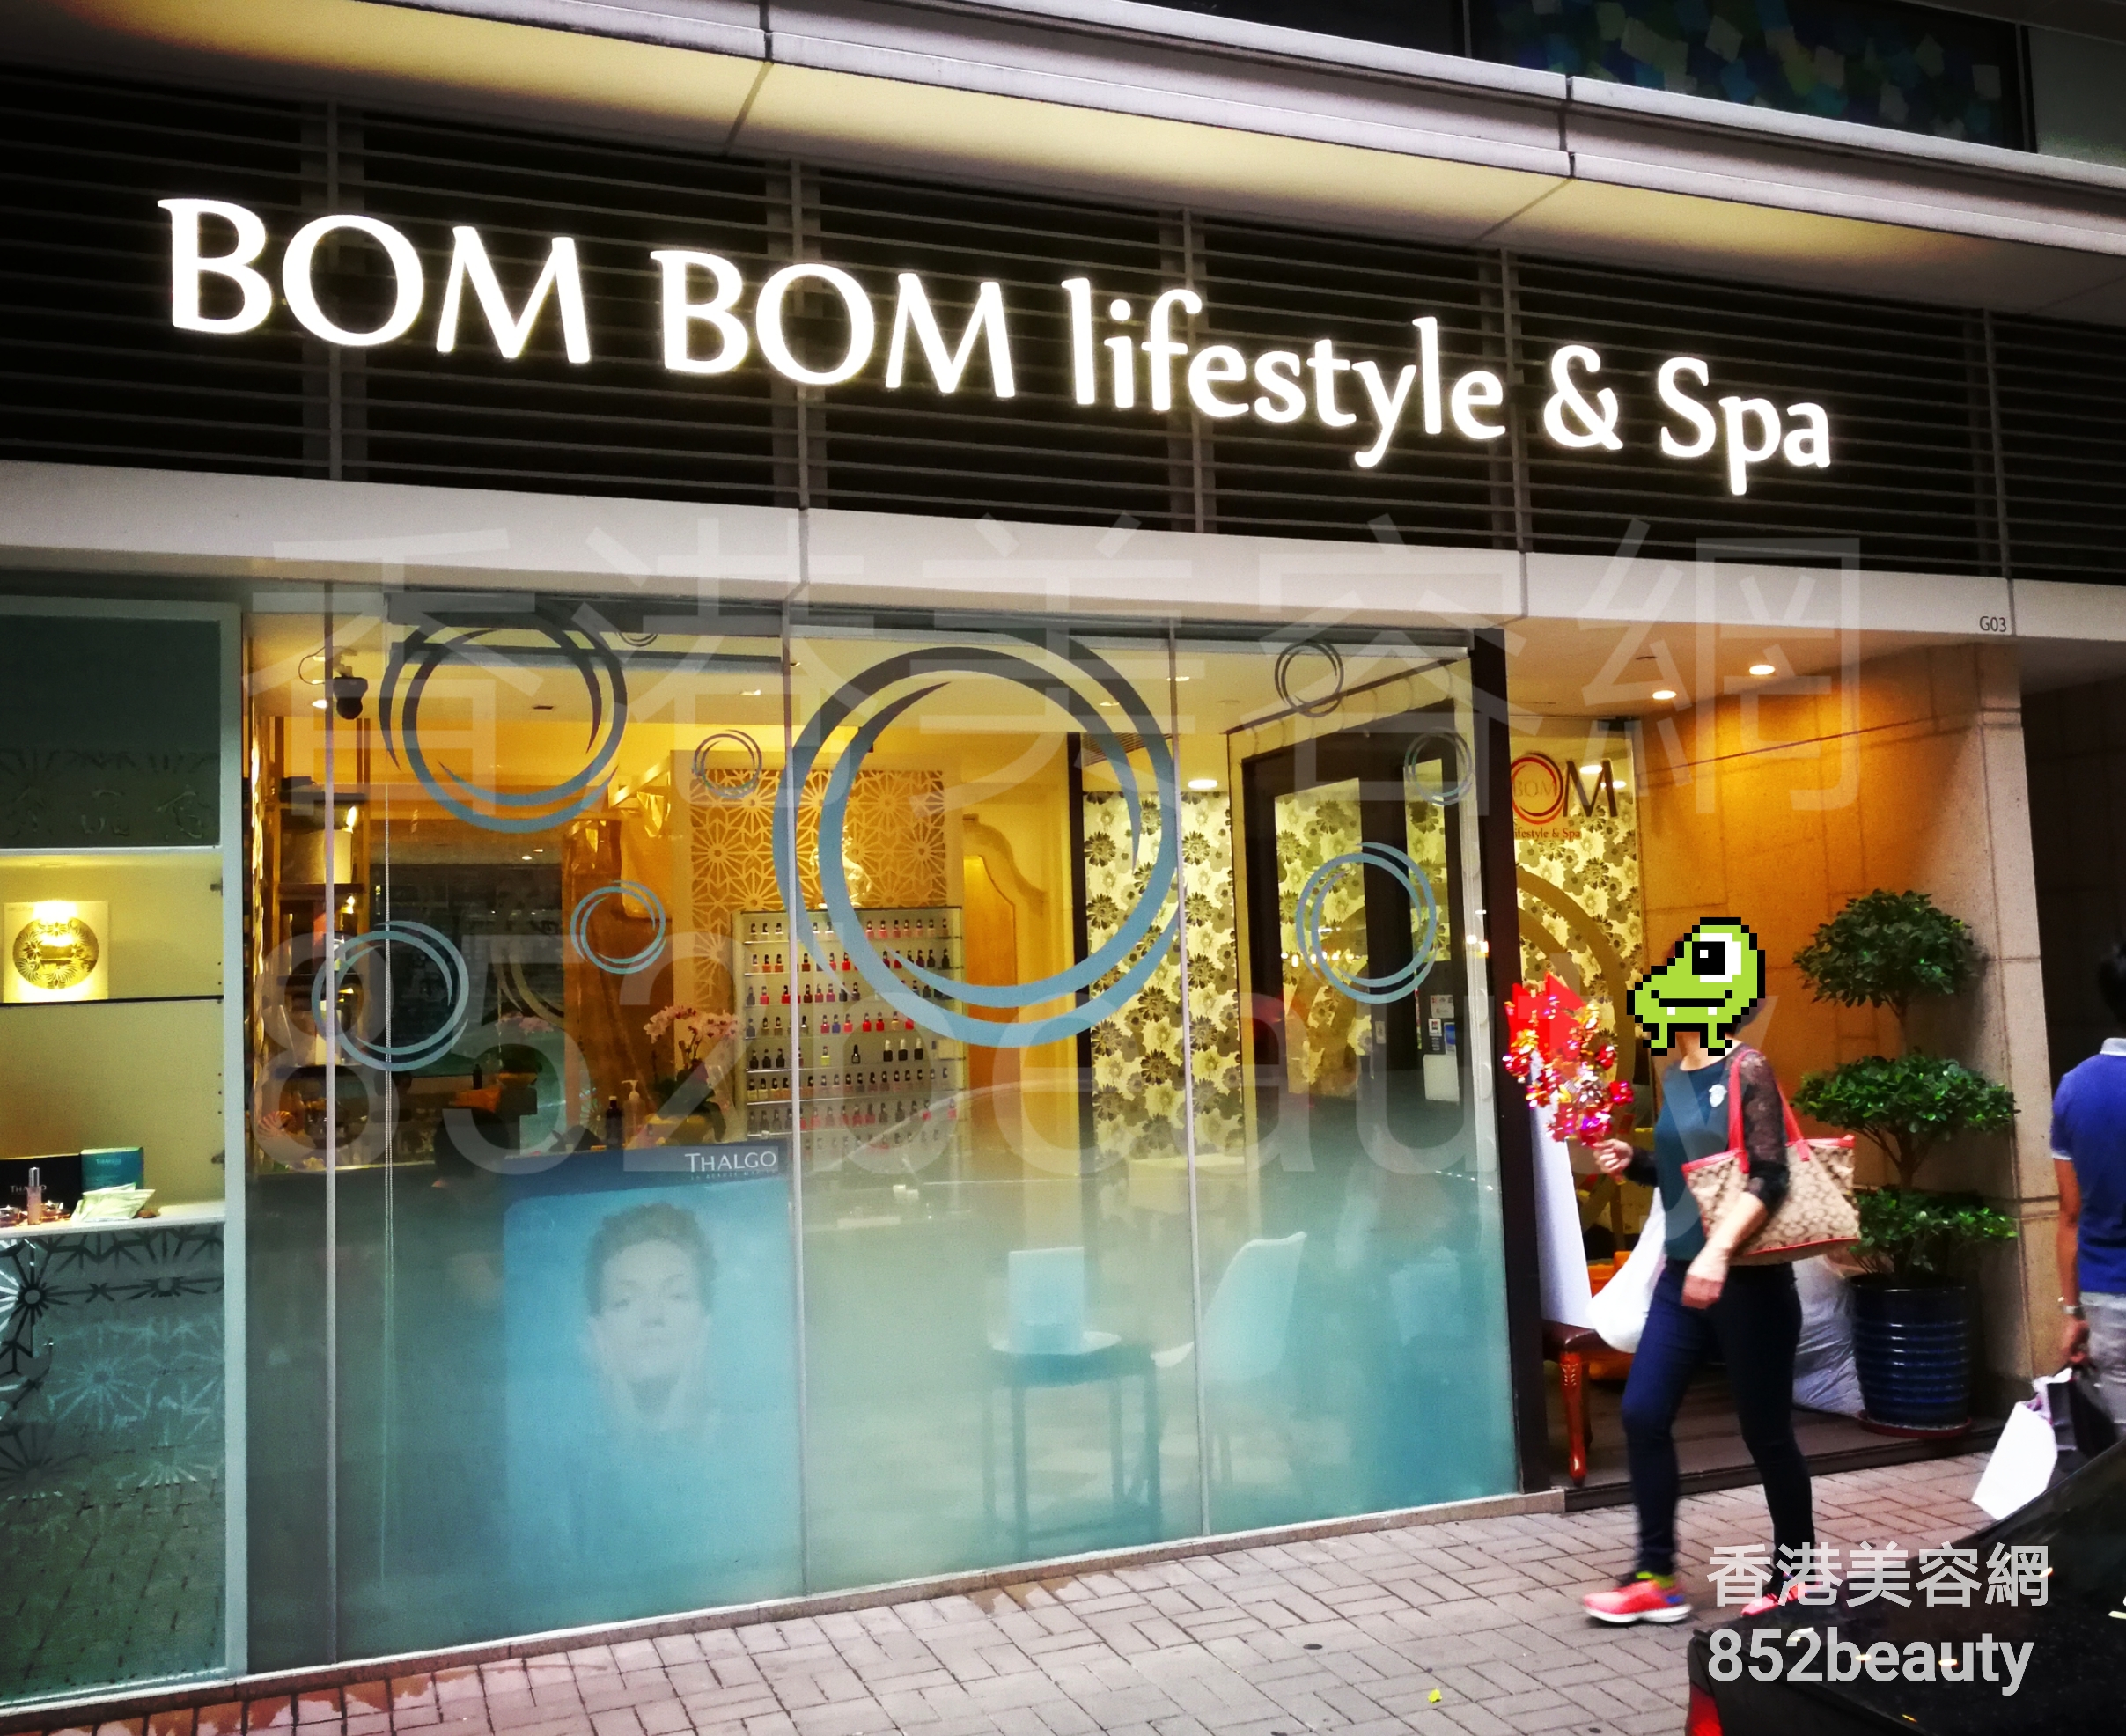 美甲: BOM BOM lifestyle & Spa